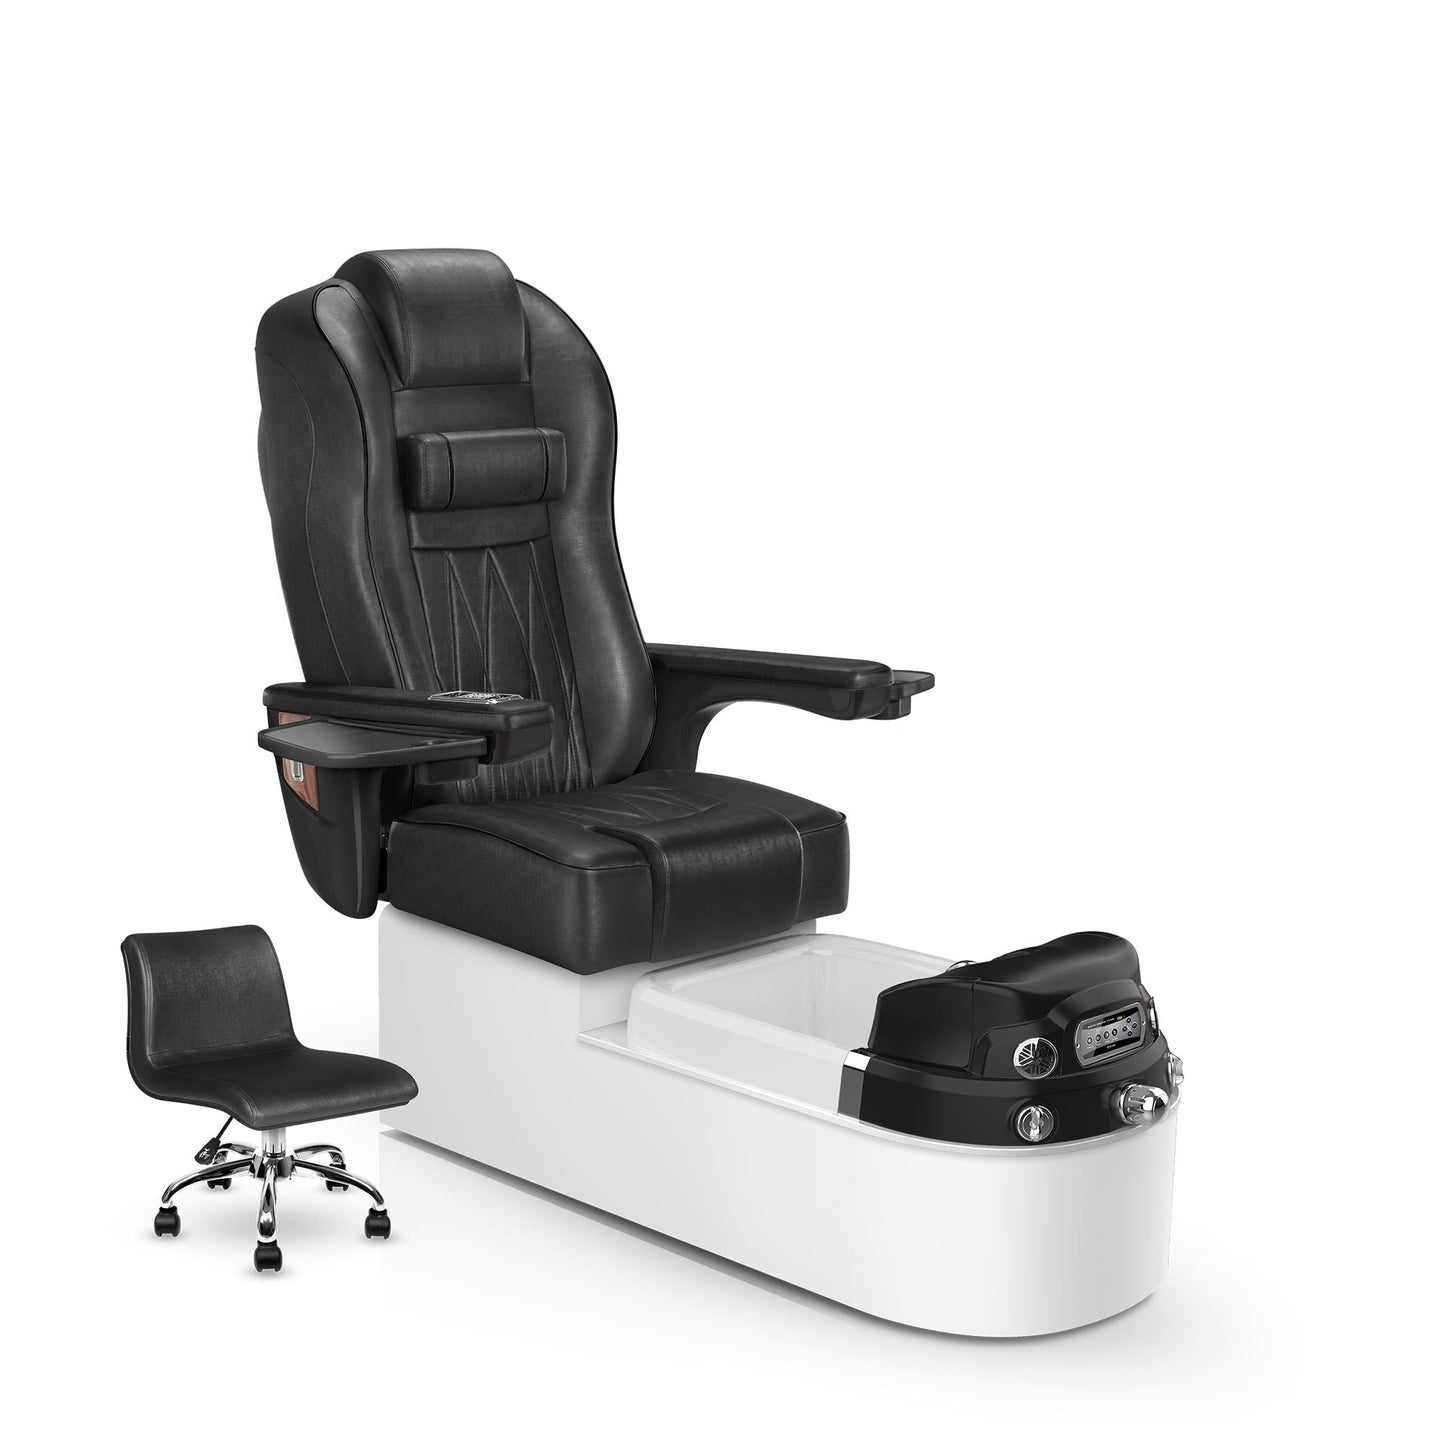 Lexor Envision pedicure chair noir cushion and white pearl base